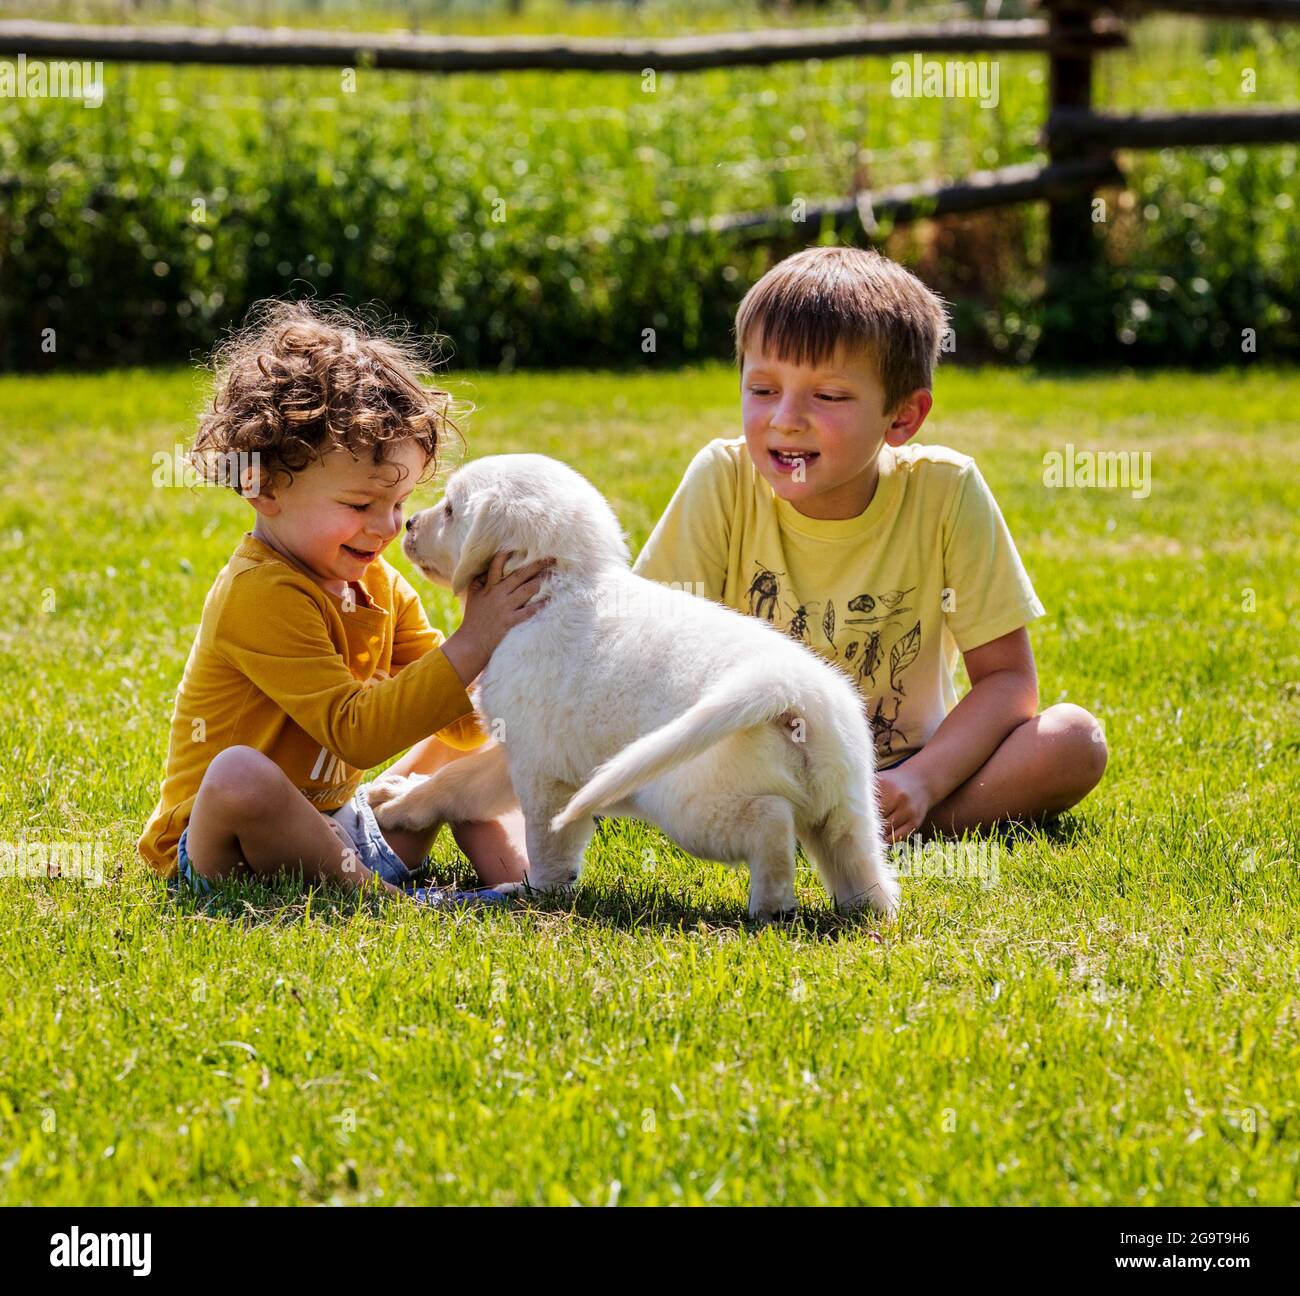 Zwei kleine Kinder, die mit sechs Wochen alten Platinum- oder Cream Coloured Golden Retriever-Welpen auf Gras spielen. Stockfoto